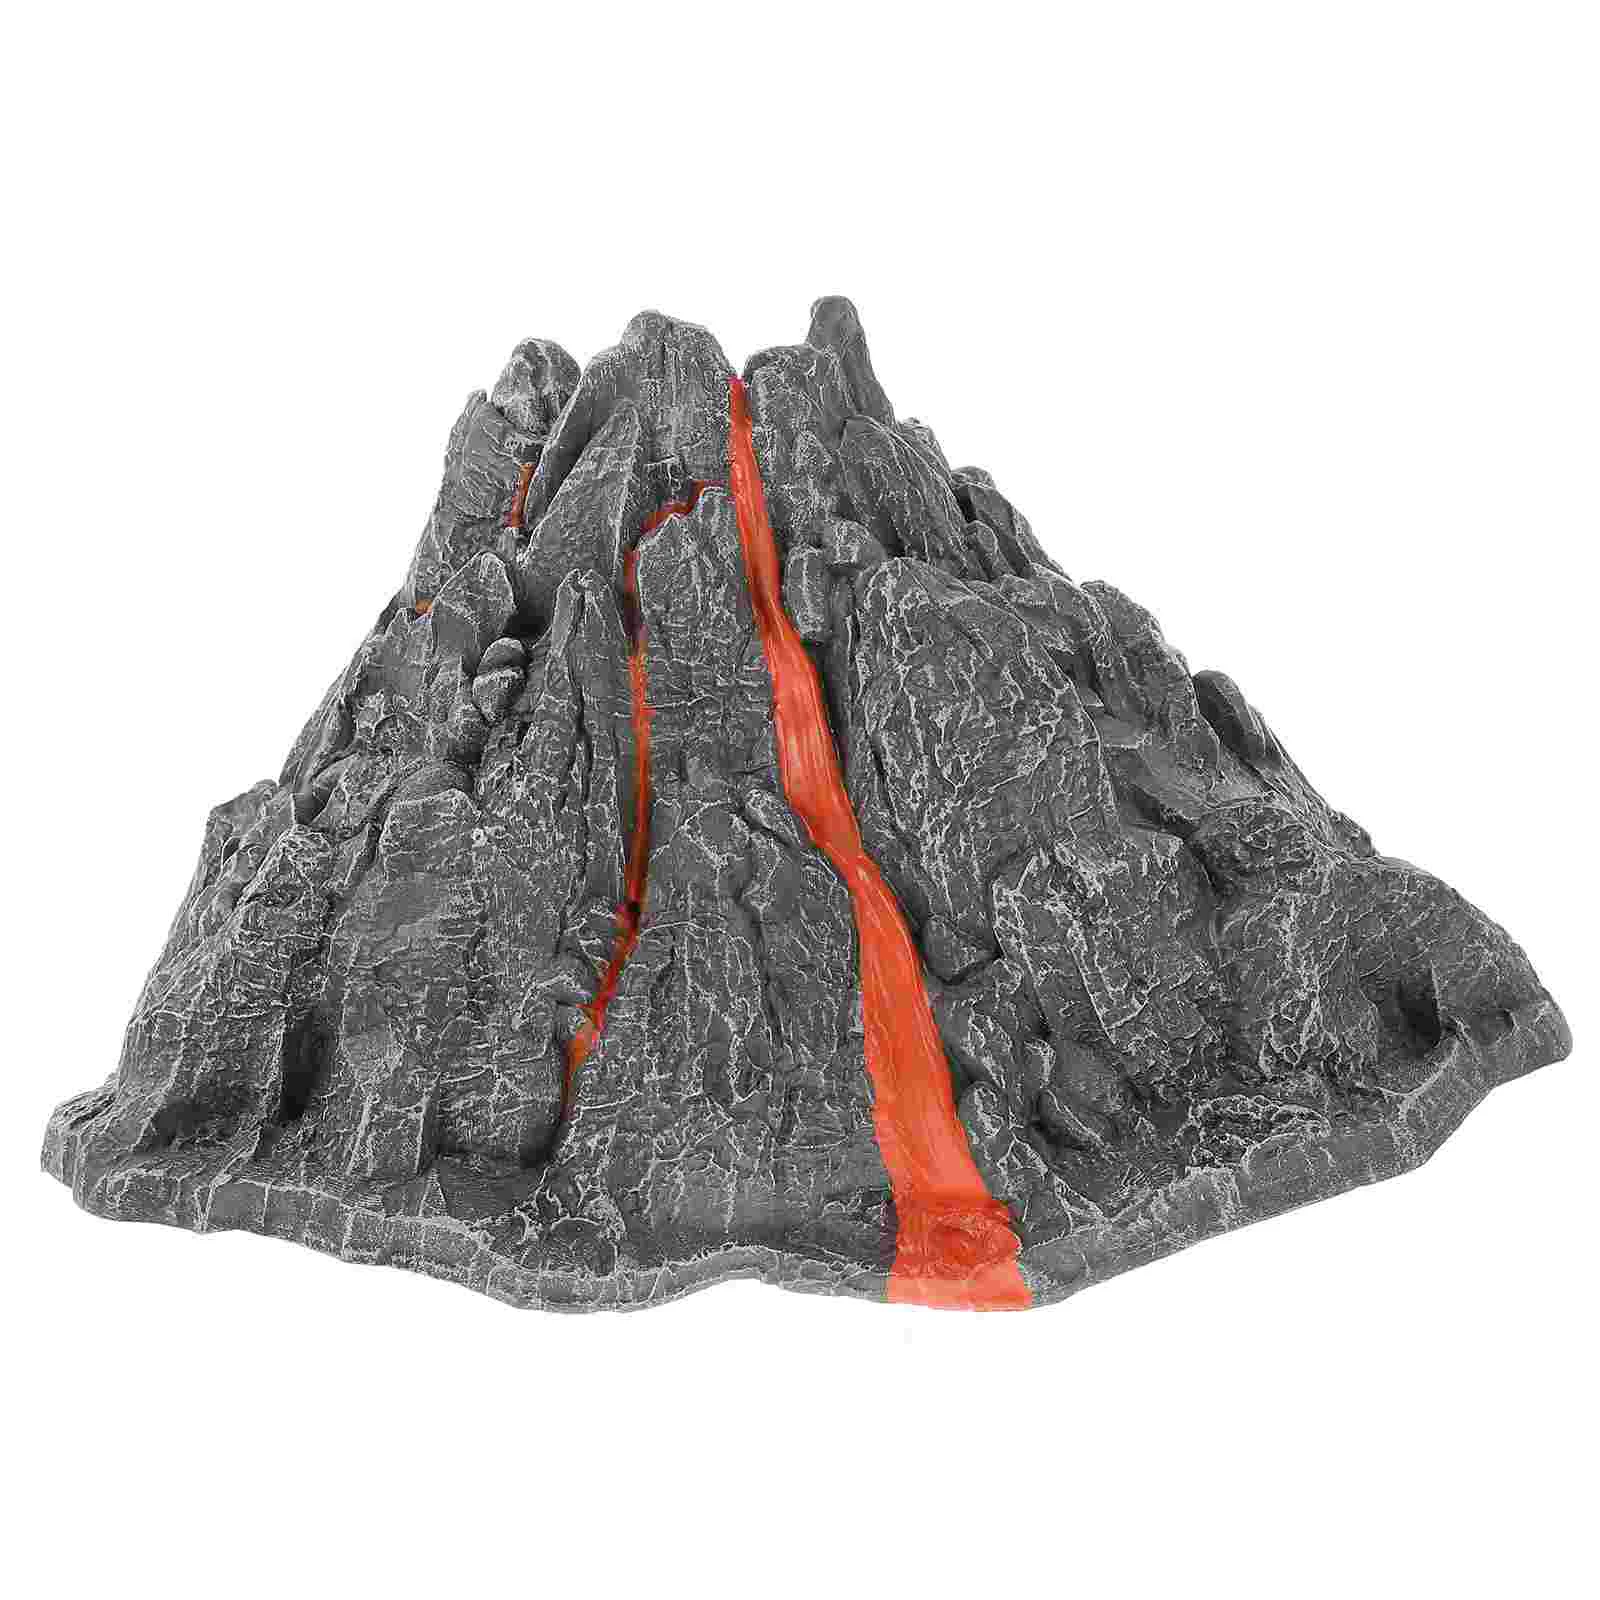 

Мини вулканическая игрушка статическая модель рыб аквариум украшение микроландшафт вулканический